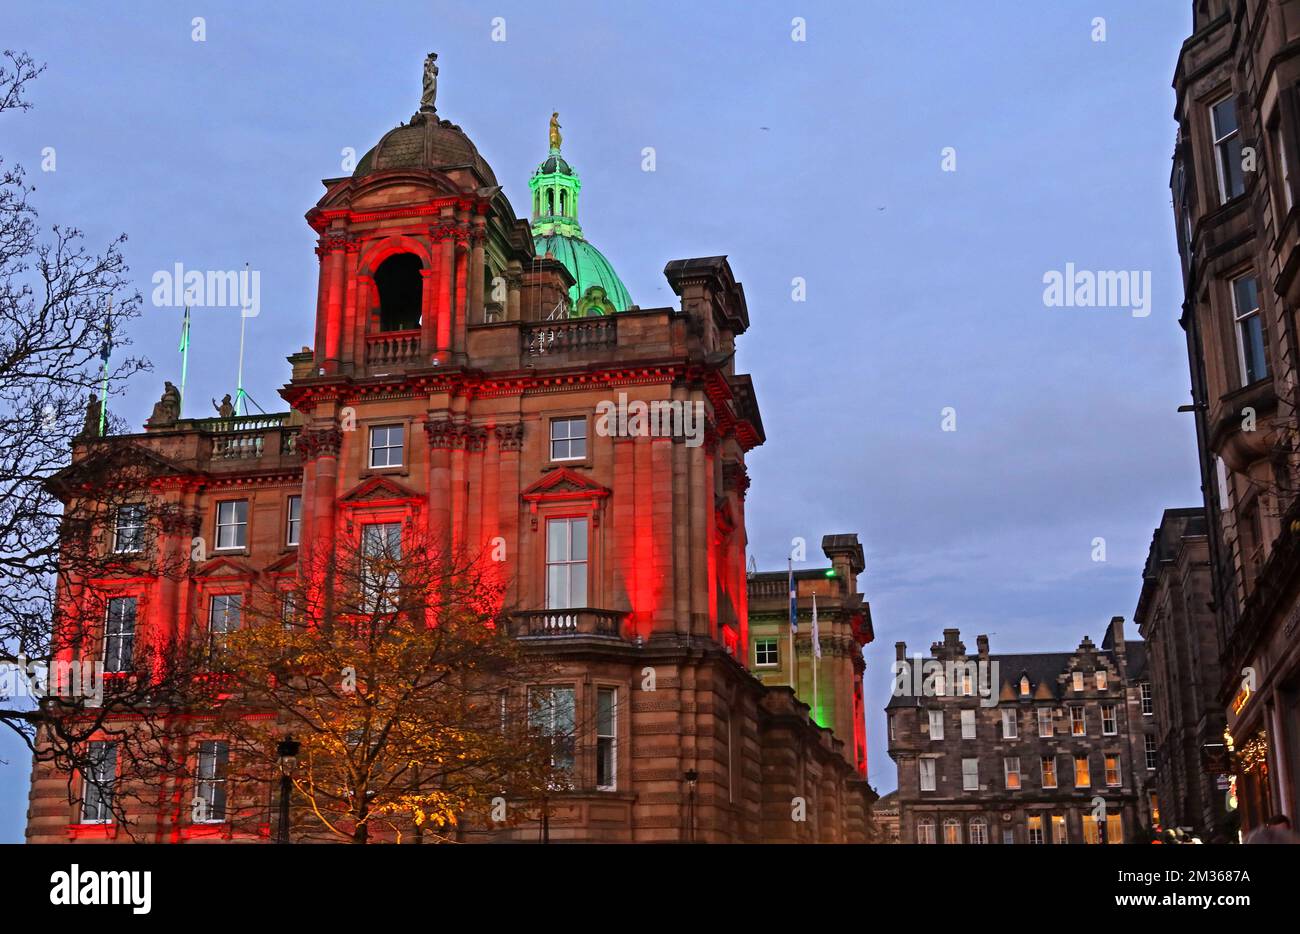 Siège social de la Bank of Scotland, The Mound & Bank Street Skyline, Édimbourg, Lothians, Écosse, Royaume-Uni, EH1 1YZ Banque D'Images